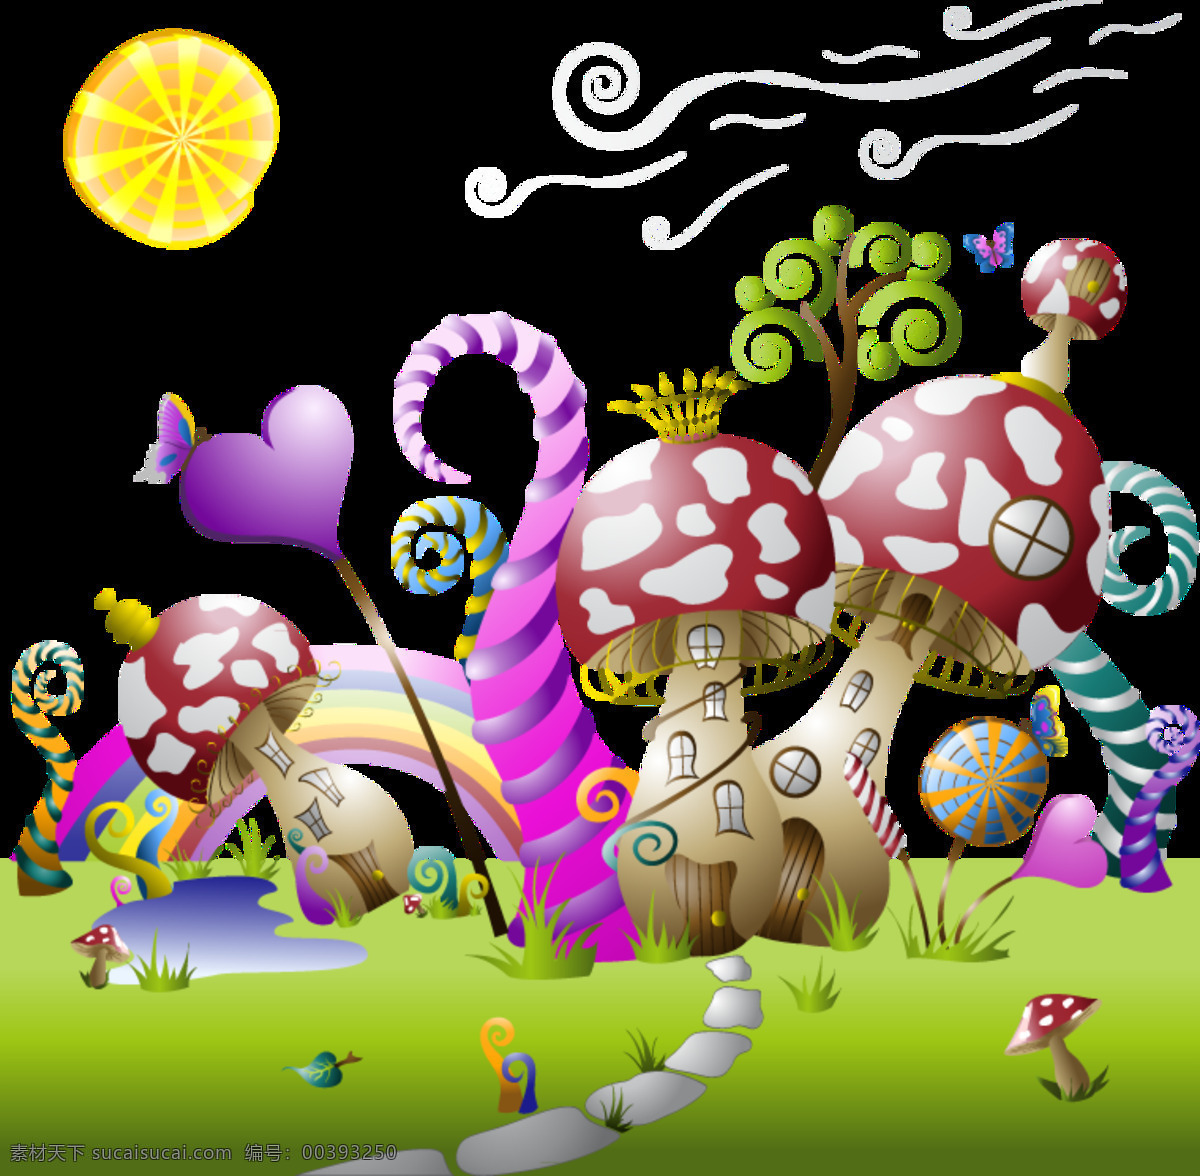 唯美 彩色 蘑菇 花园 图案 爱心 彩绘素材 蘑菇花园 设计图案 设计元素 童话世界 童话屋 装饰图片